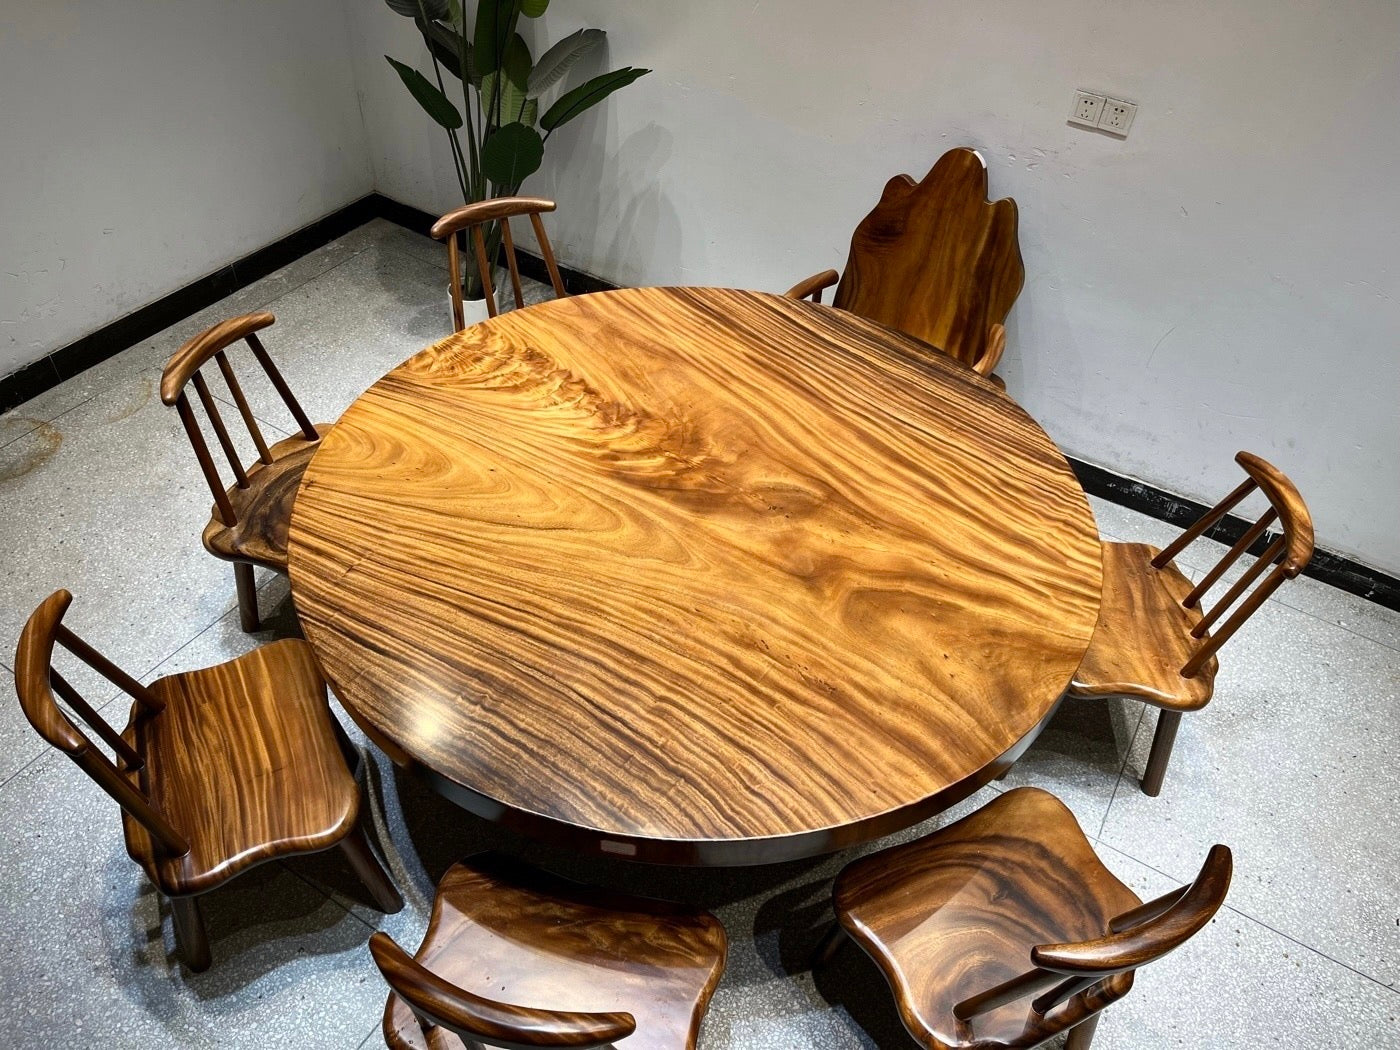 71" großer runder Holztisch, runder Massivholztisch, runder Holztischsockel, großer runder Holztisch